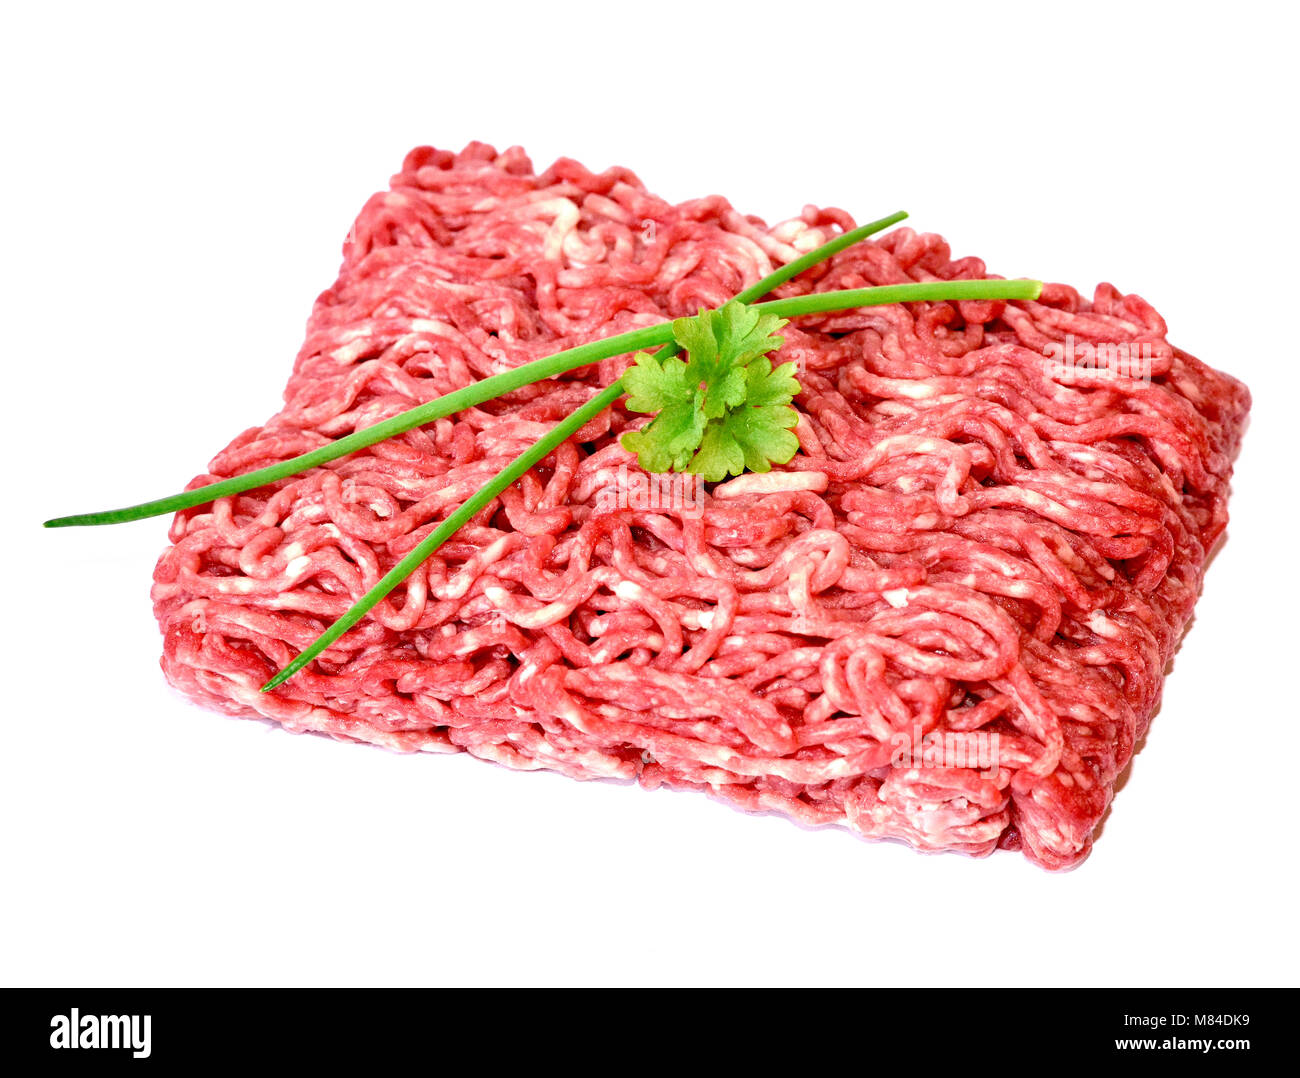 Materie le carni macinate o le carni bovine, isolato su sfondo bianco. Carni fresche, ingrediente di cottura. ad alto angolo di visione. Foto Stock